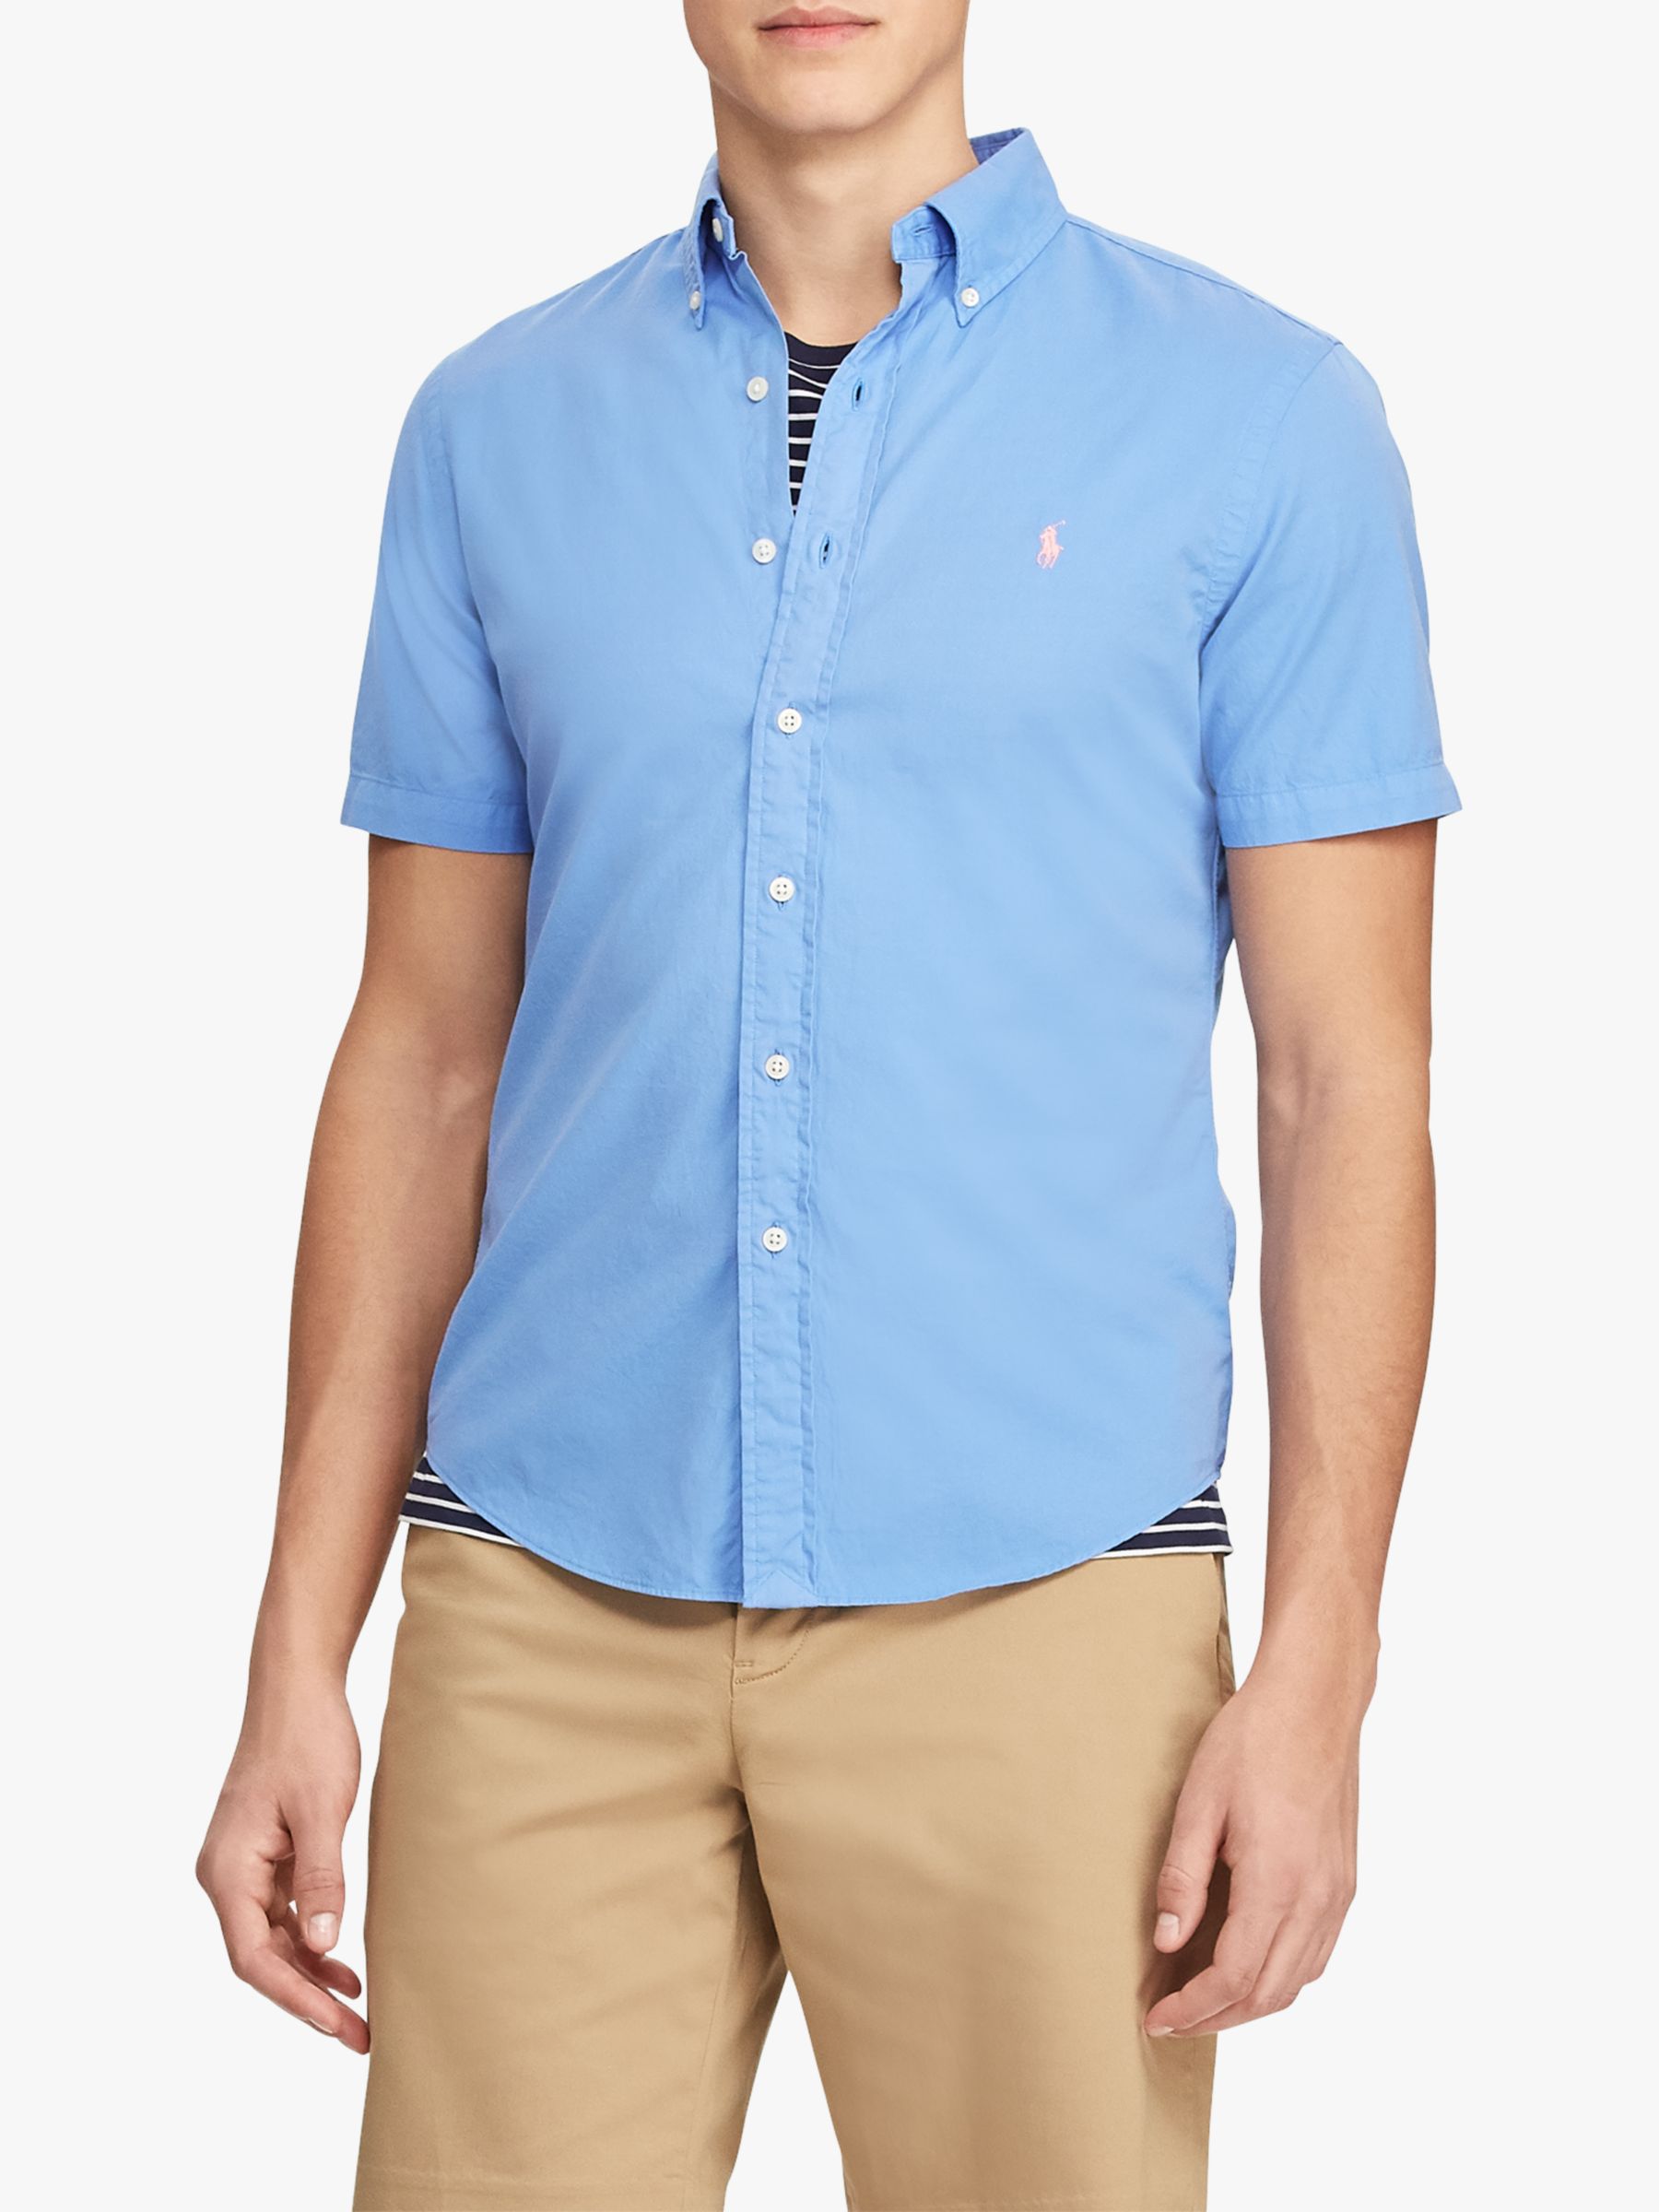 Polo Ralph Lauren Short Sleeve Shirt at 